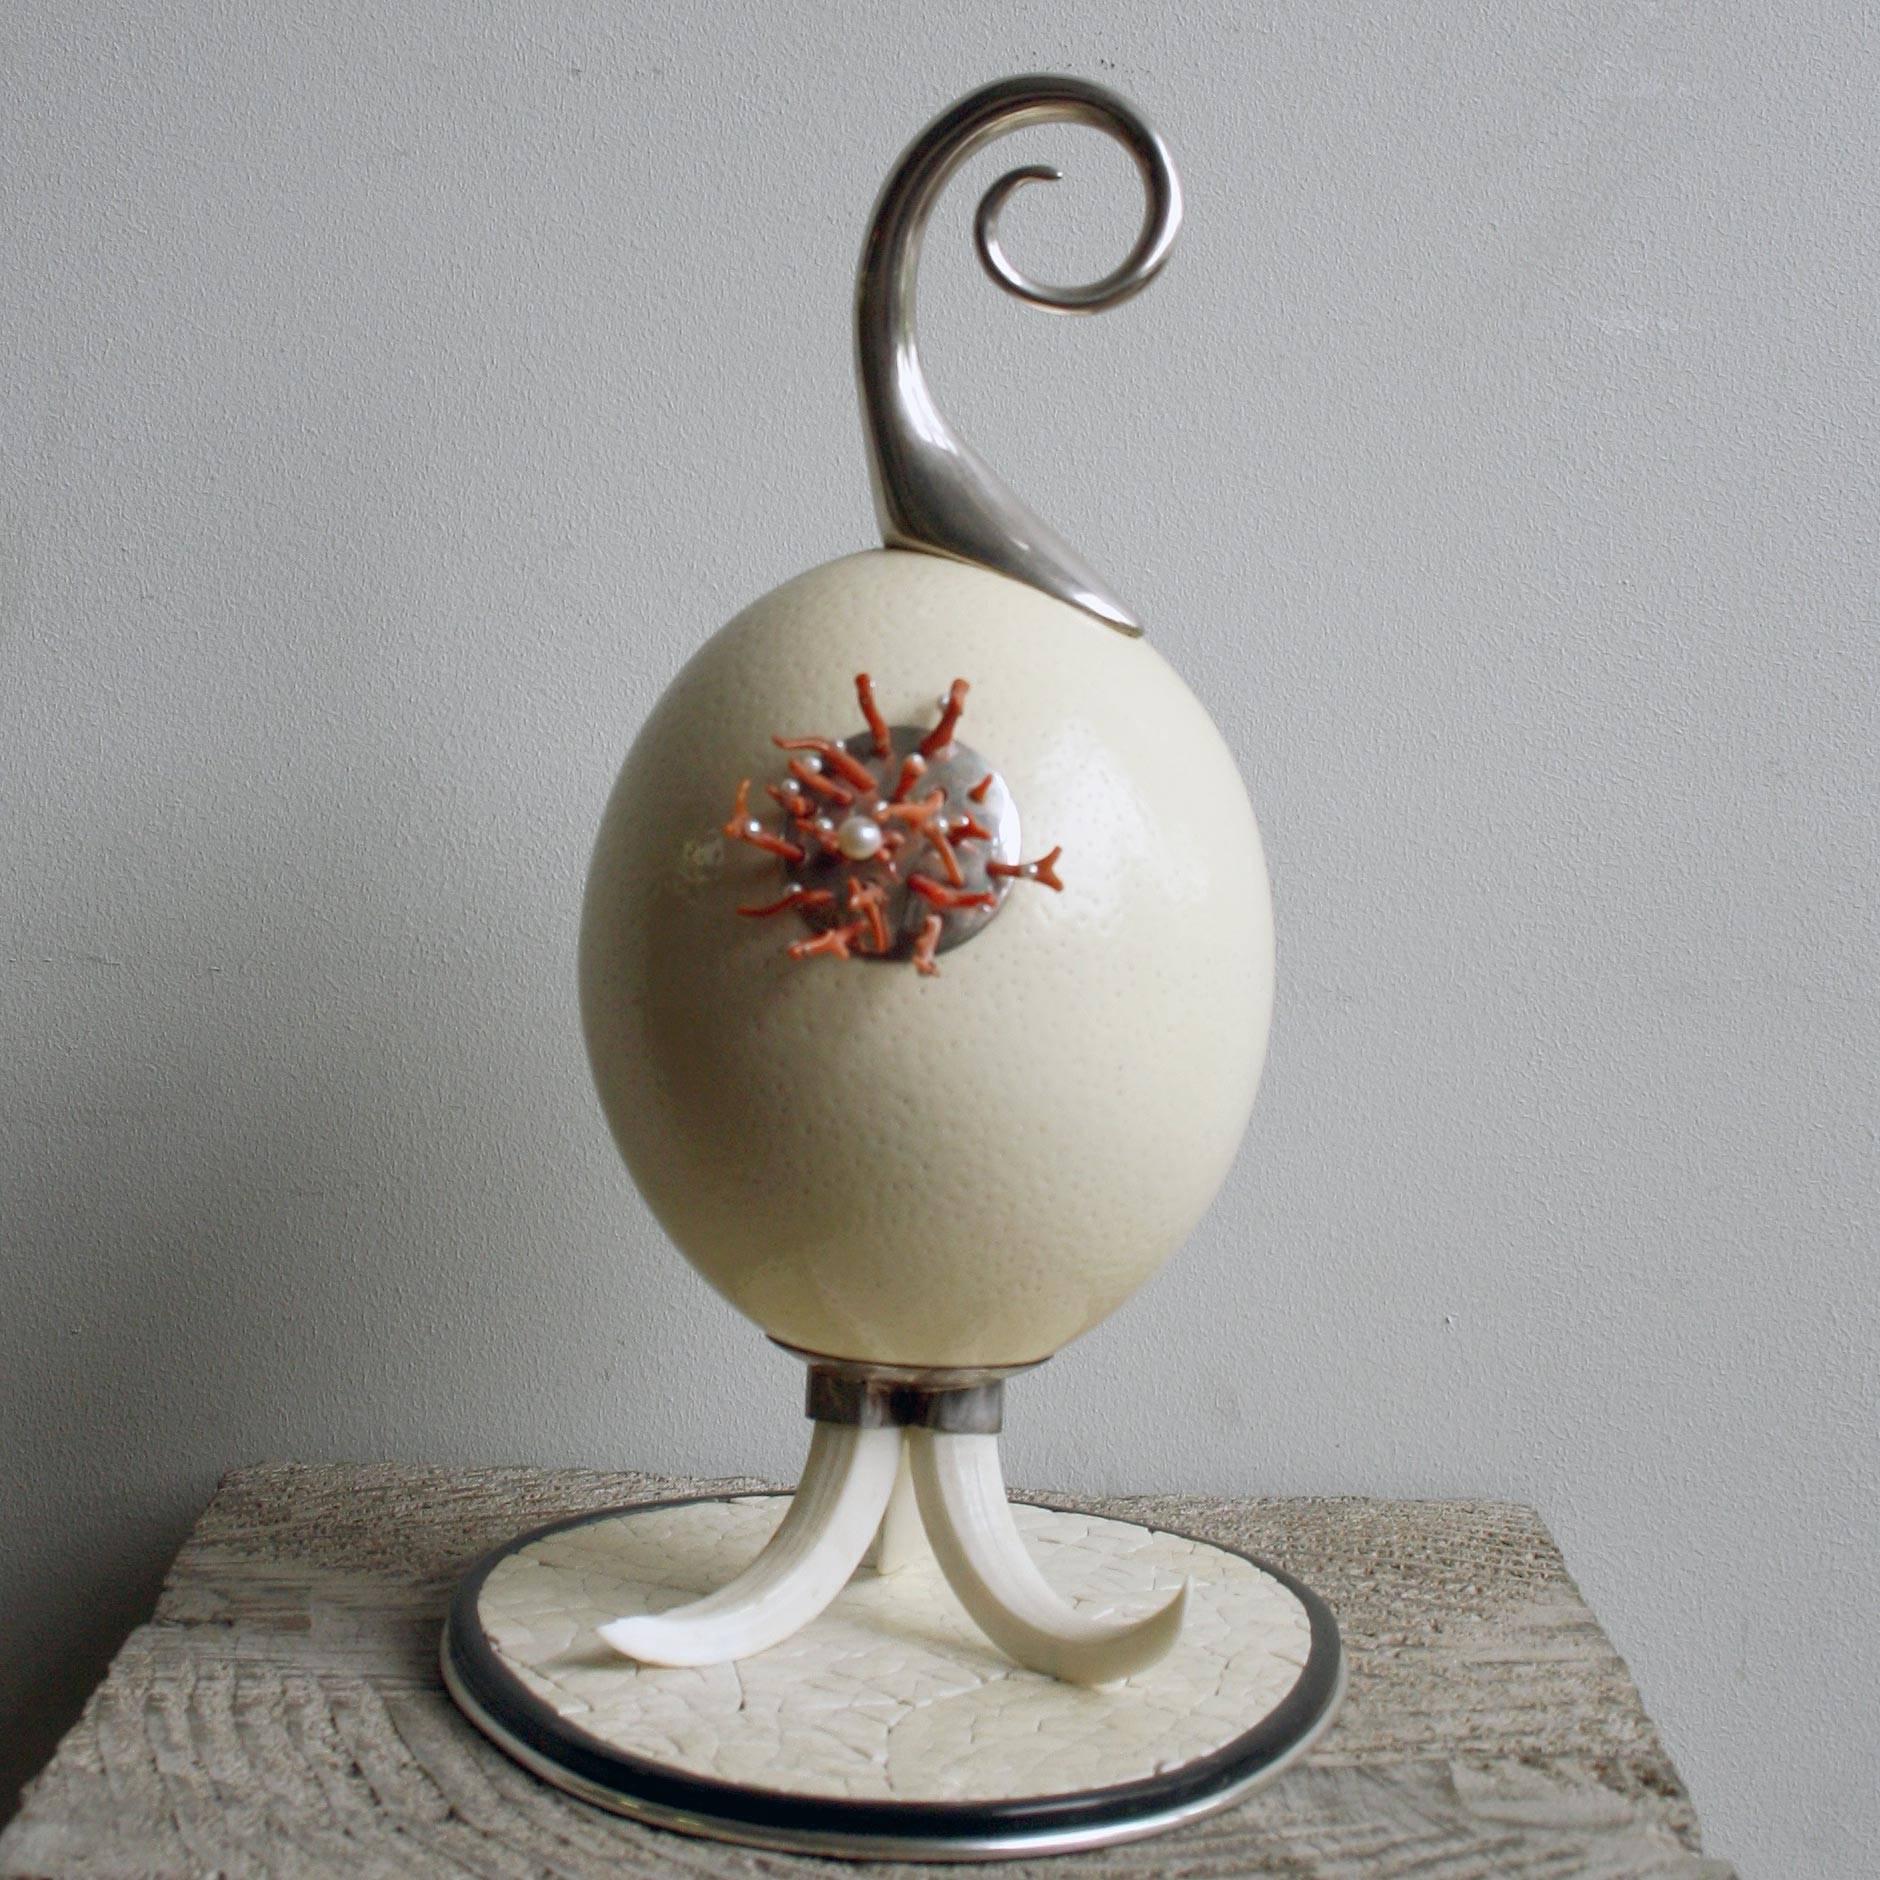 Sculpture en forme d'œuf d'autruche réalisée par Glyn Lockett, avec une tige en laiton argenté et une plaque appliquée avec du corail et des perles de rocaille sur une base en corne de buffle argentée, sertie de sections d'œufs d'autruche écrasés,